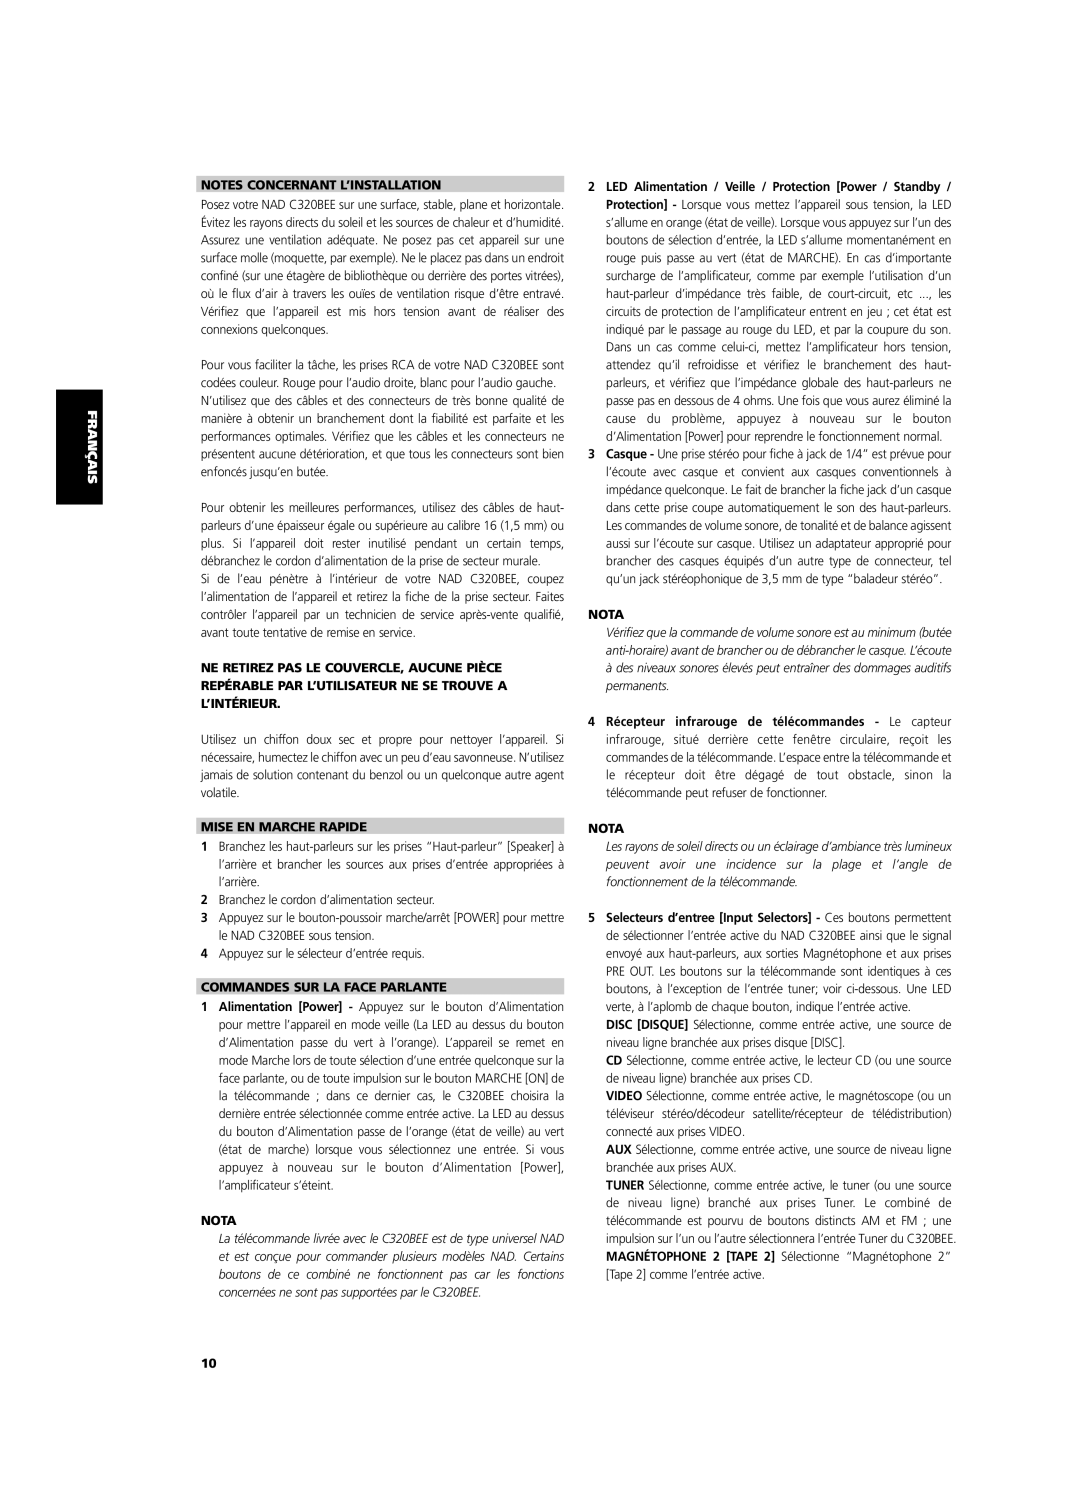 NAD C320BEE owner manual Notes Concernant L’Installation, Mise En Marche Rapide, Commandes Sur La Face Parlante, Nota 